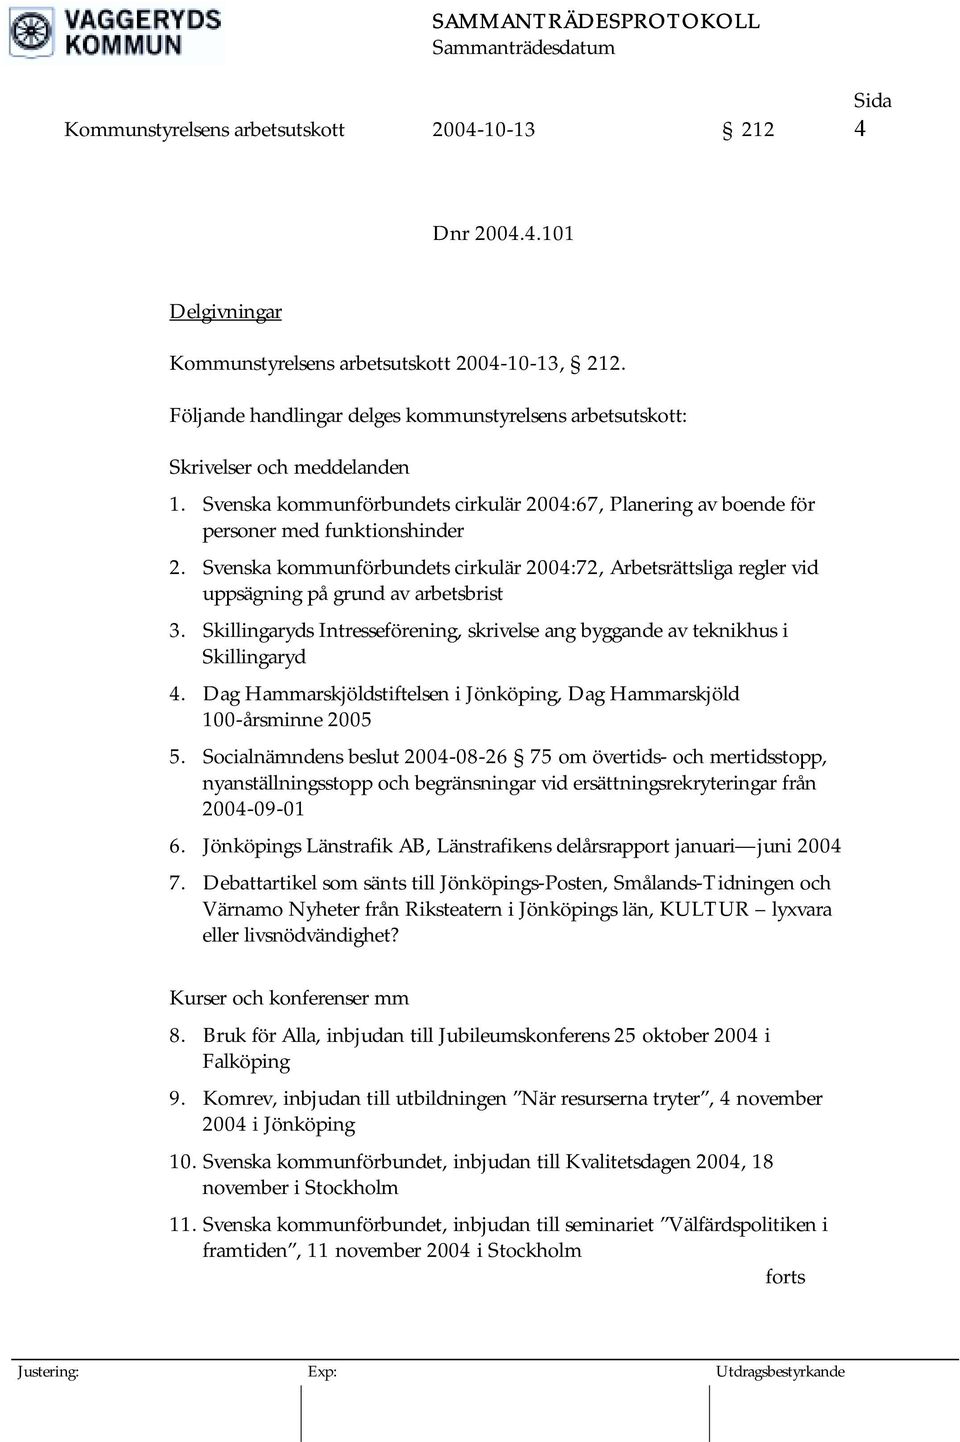 Svenska kommunförbundets cirkulär 2004:72, Arbetsrättsliga regler vid uppsägning på grund av arbetsbrist 3. Skillingaryds Intresseförening, skrivelse ang byggande av teknikhus i Skillingaryd 4.